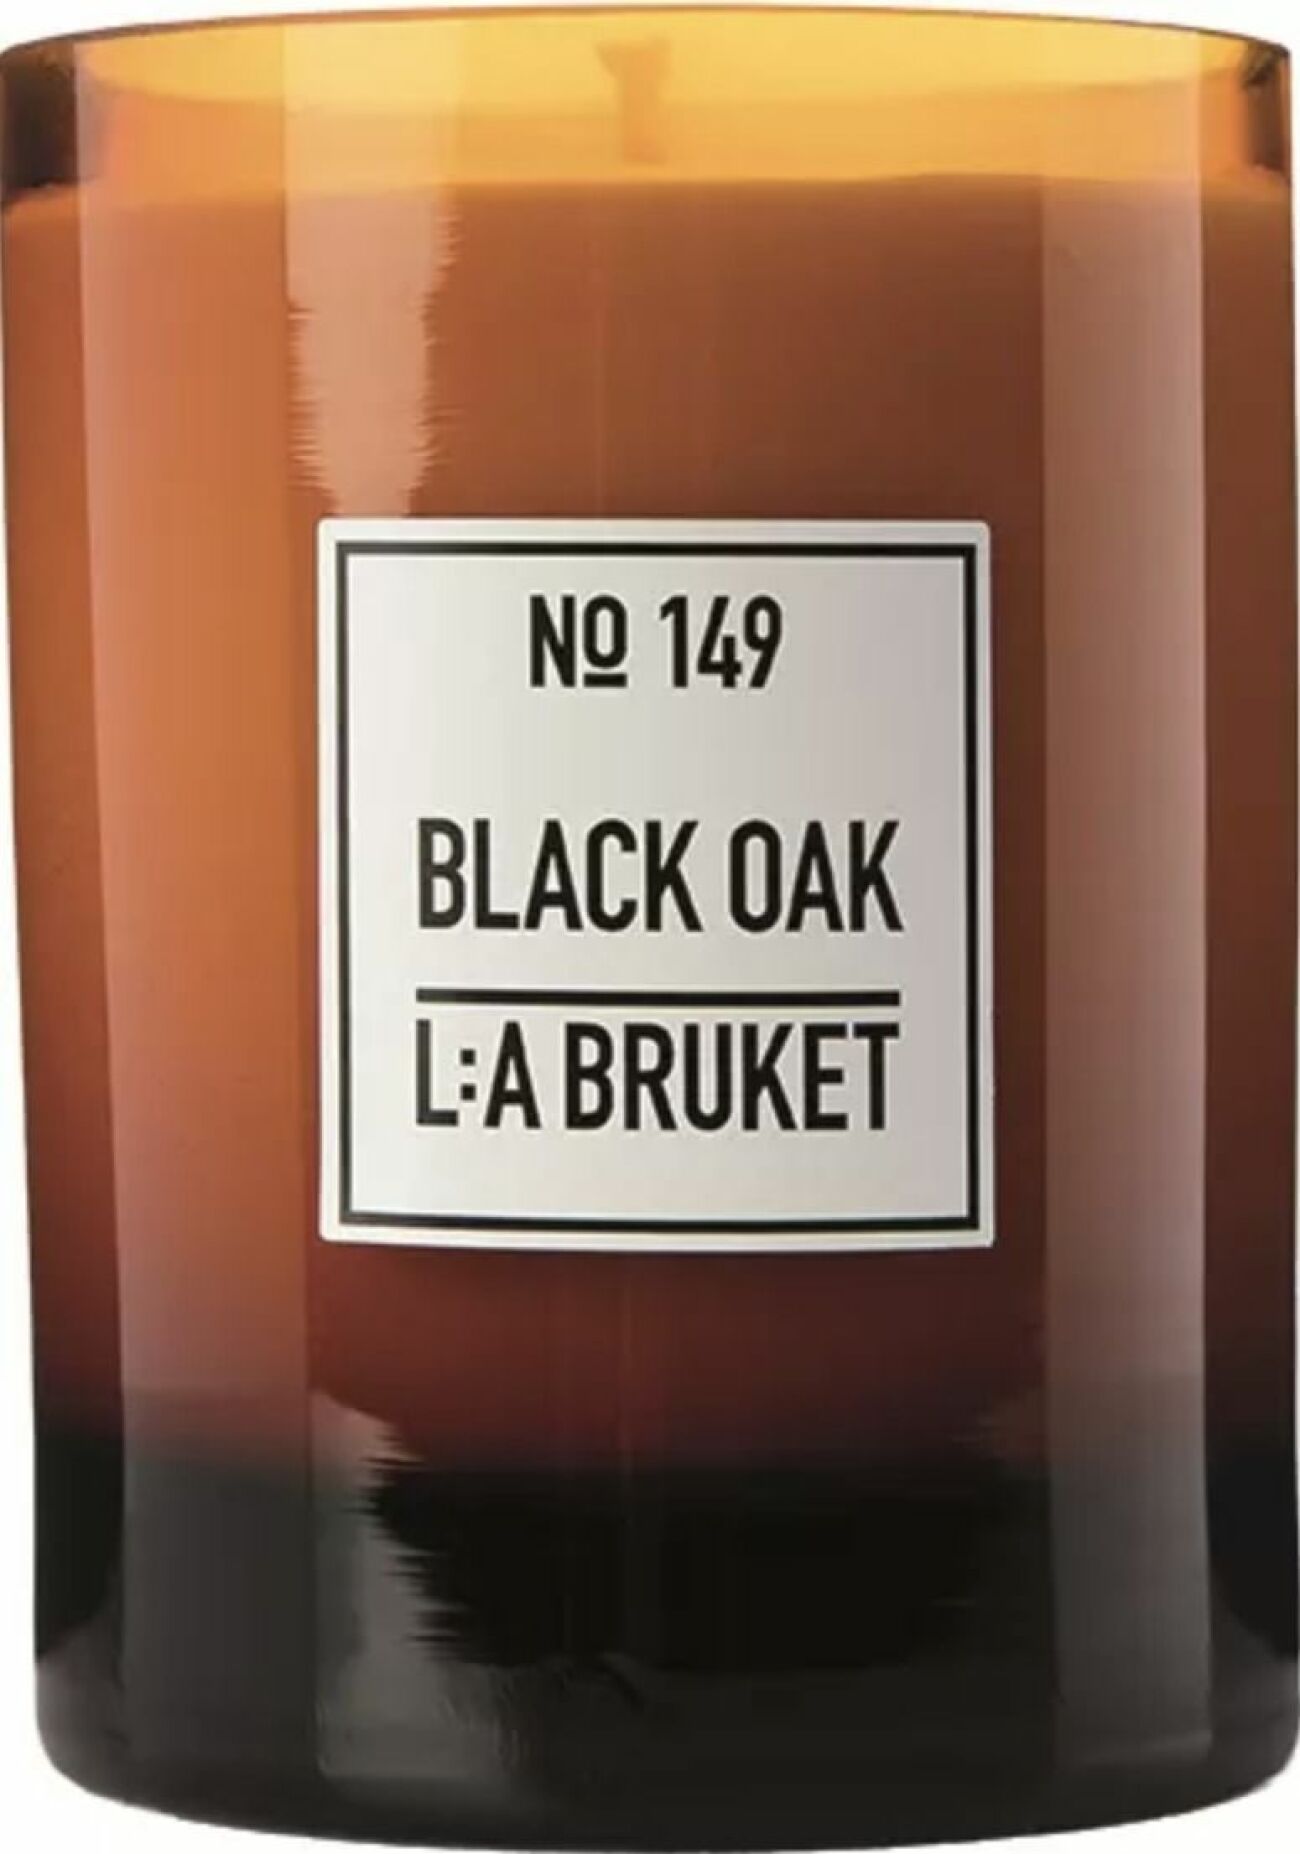 Black oak, LA Bruket